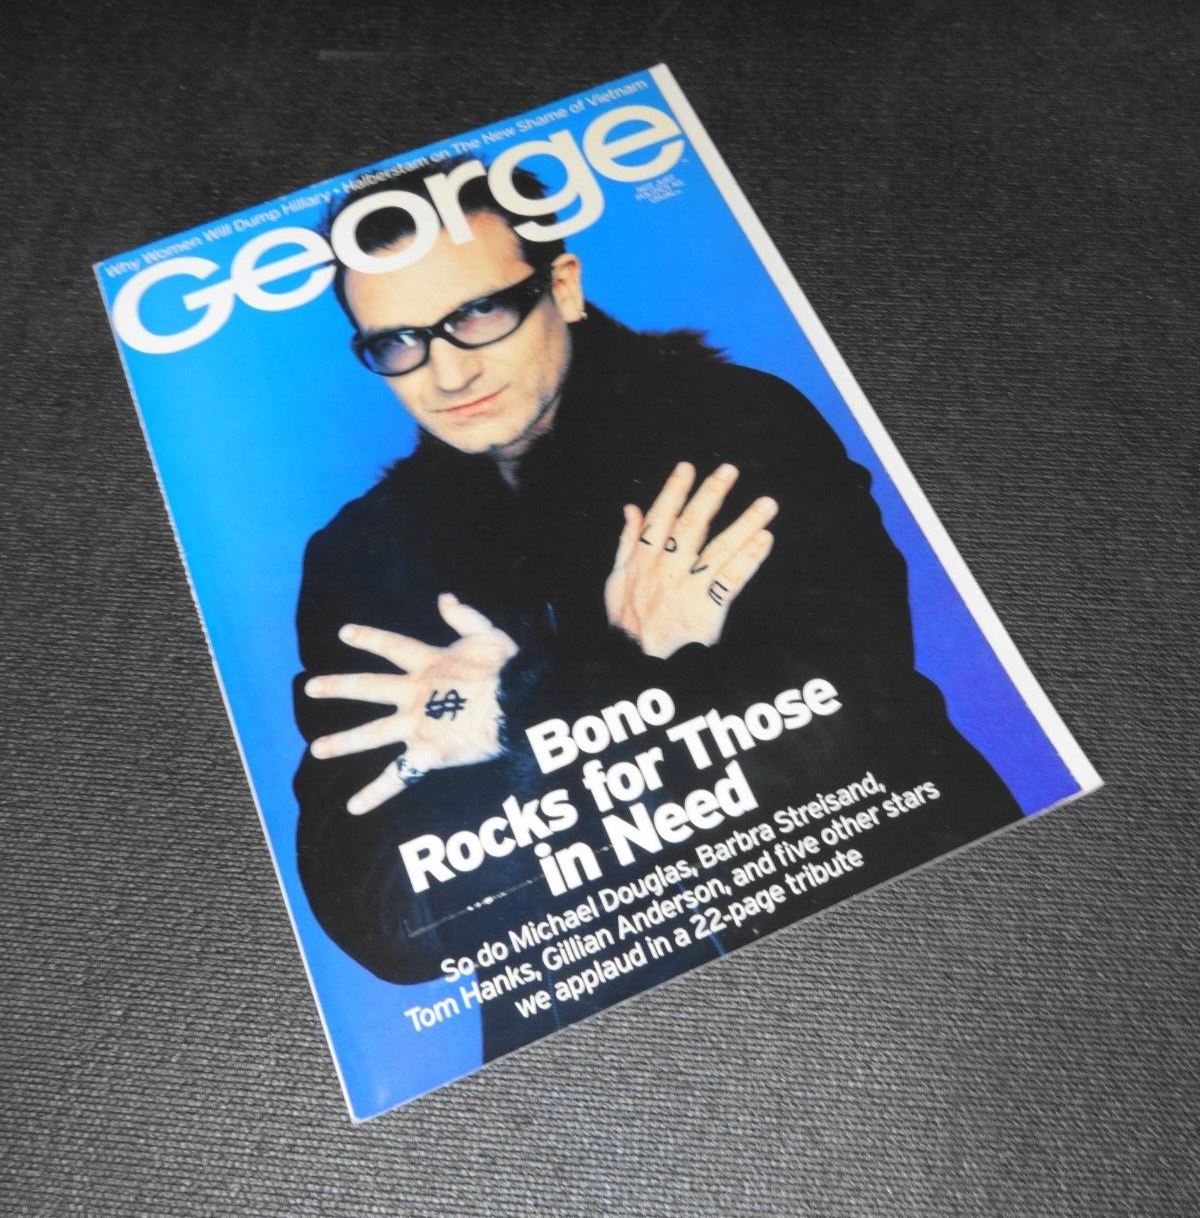 2000 April GEORGE - JFK Jr Magazine - Bono